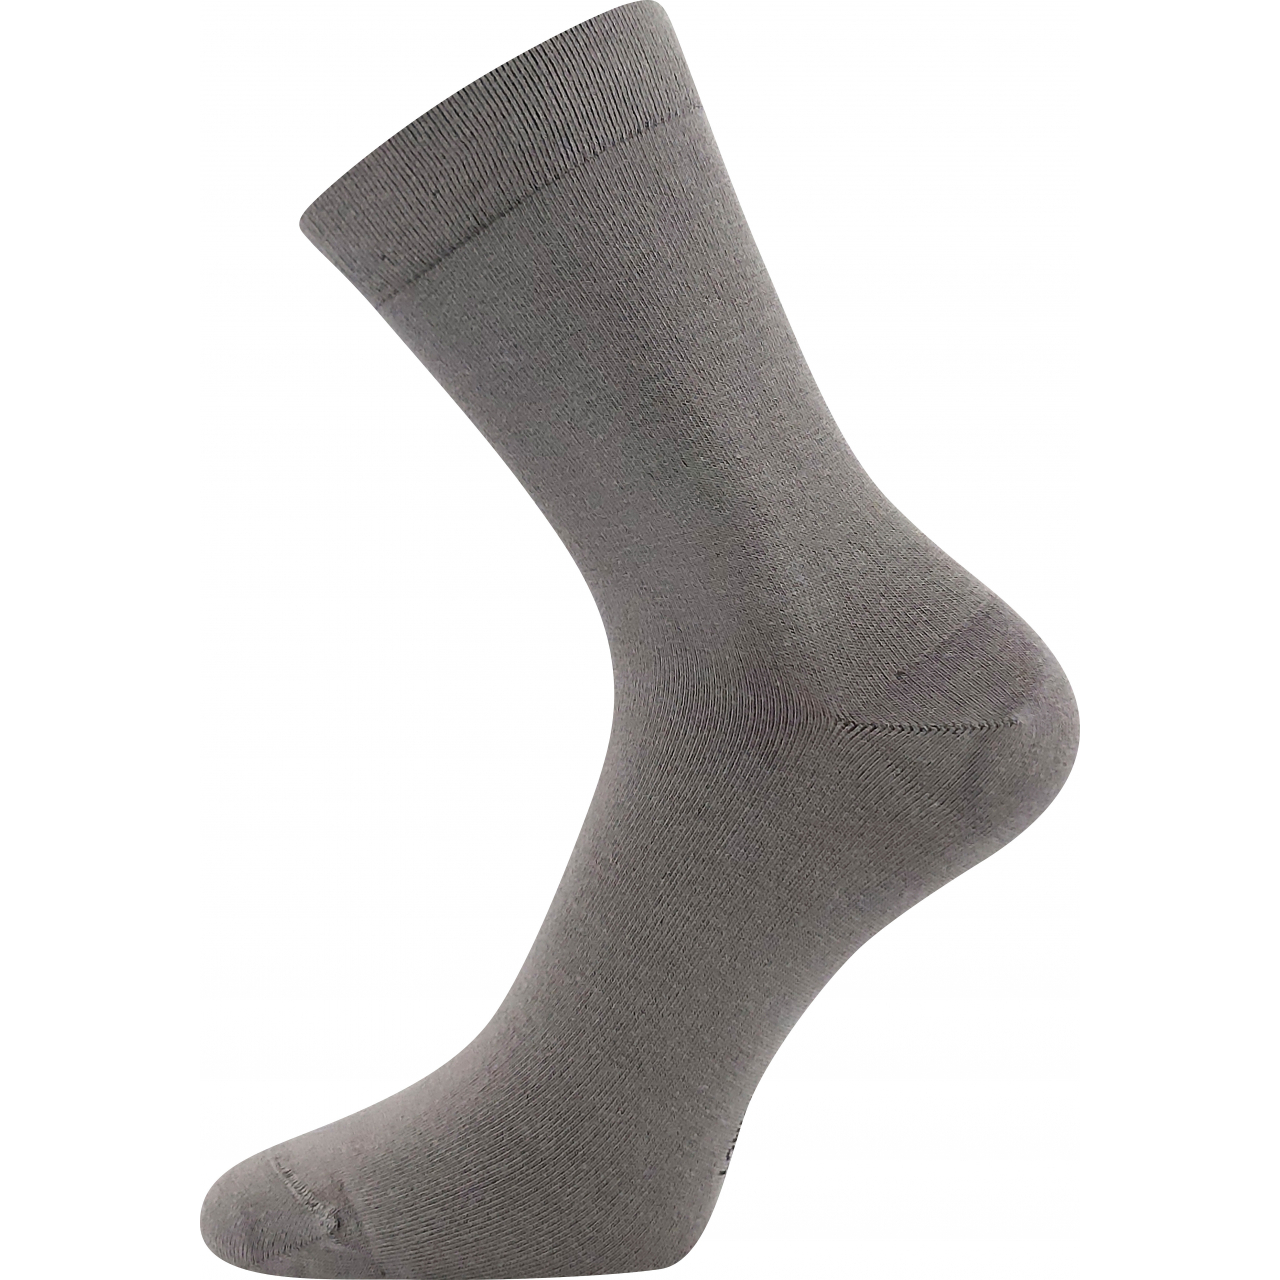 Ponožky unisex zdravotní Lonka Drbambik - šedé, 35-38